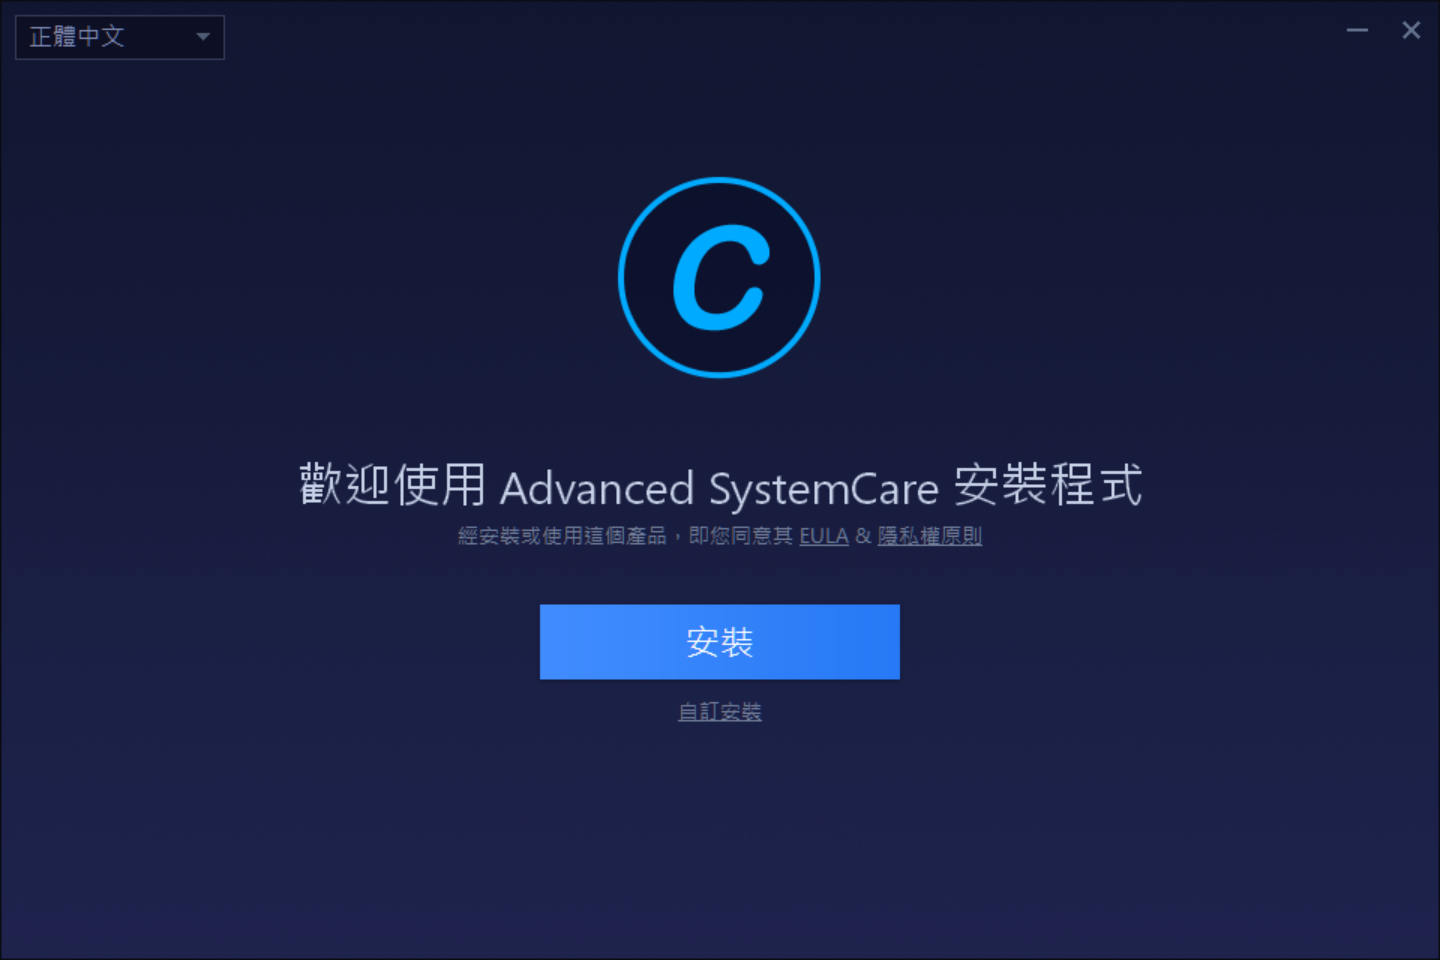 Image 001 - 【2021最新金鑰】Advanced SystemCare 14 Pro 免費下載+授權！一鍵清除電腦垃圾